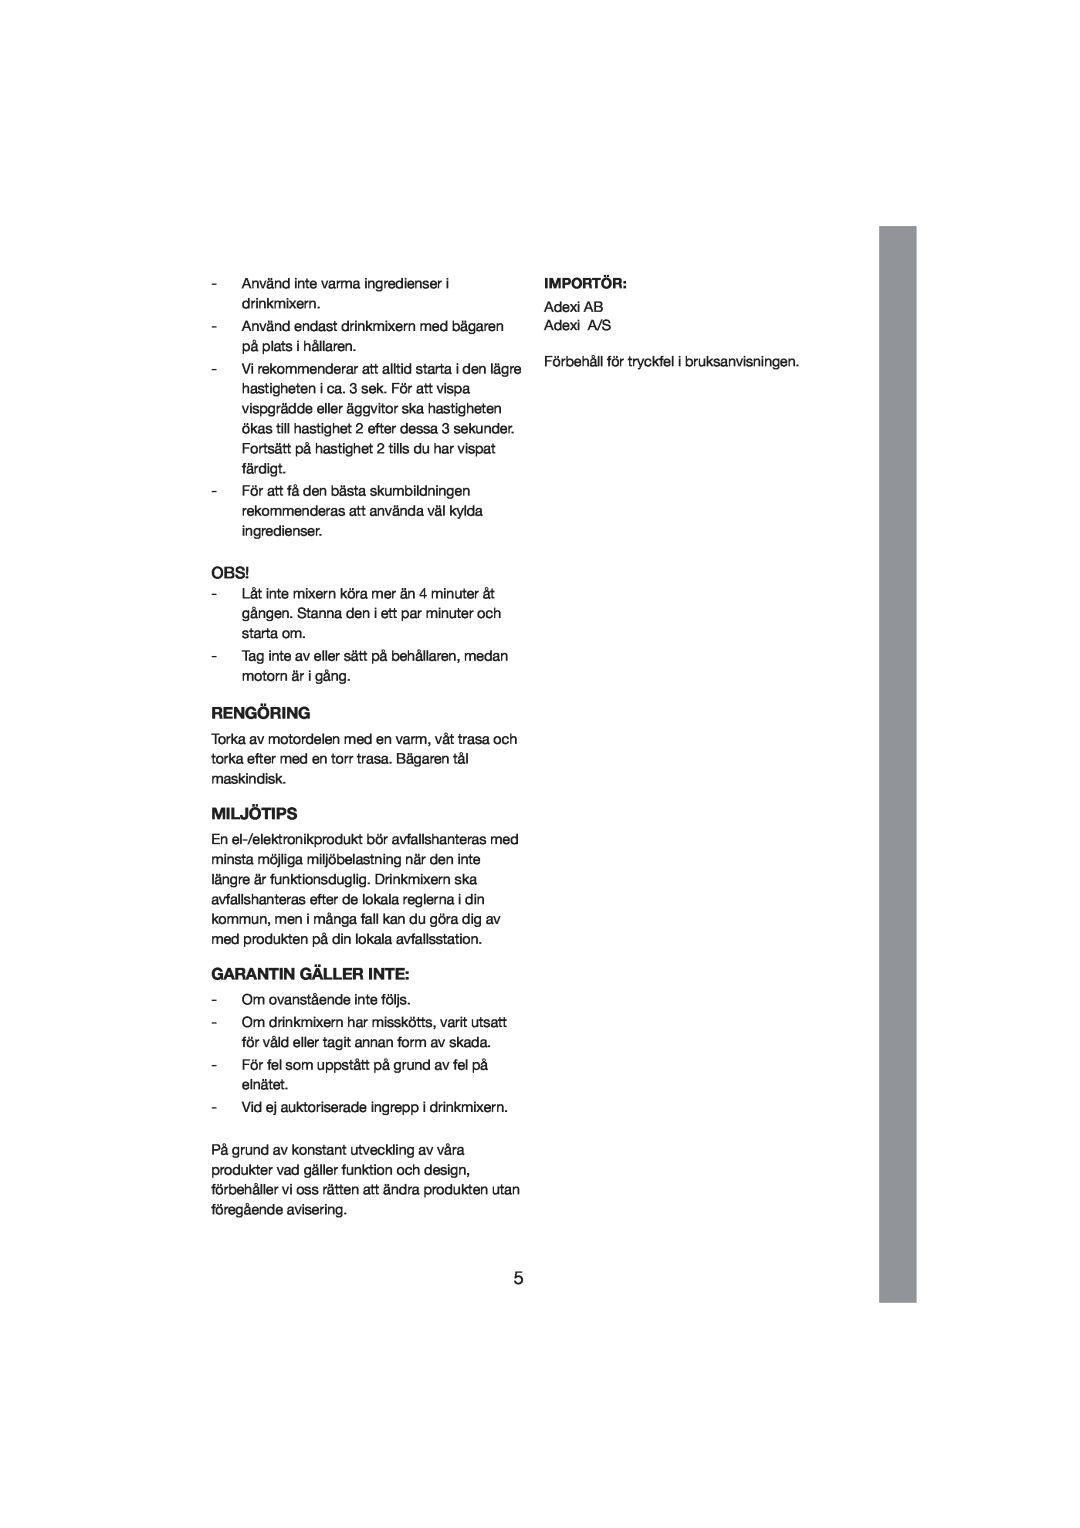 Melissa 246-002 manual Rengöring, Miljötips, Garantin Gäller Inte, Importör 